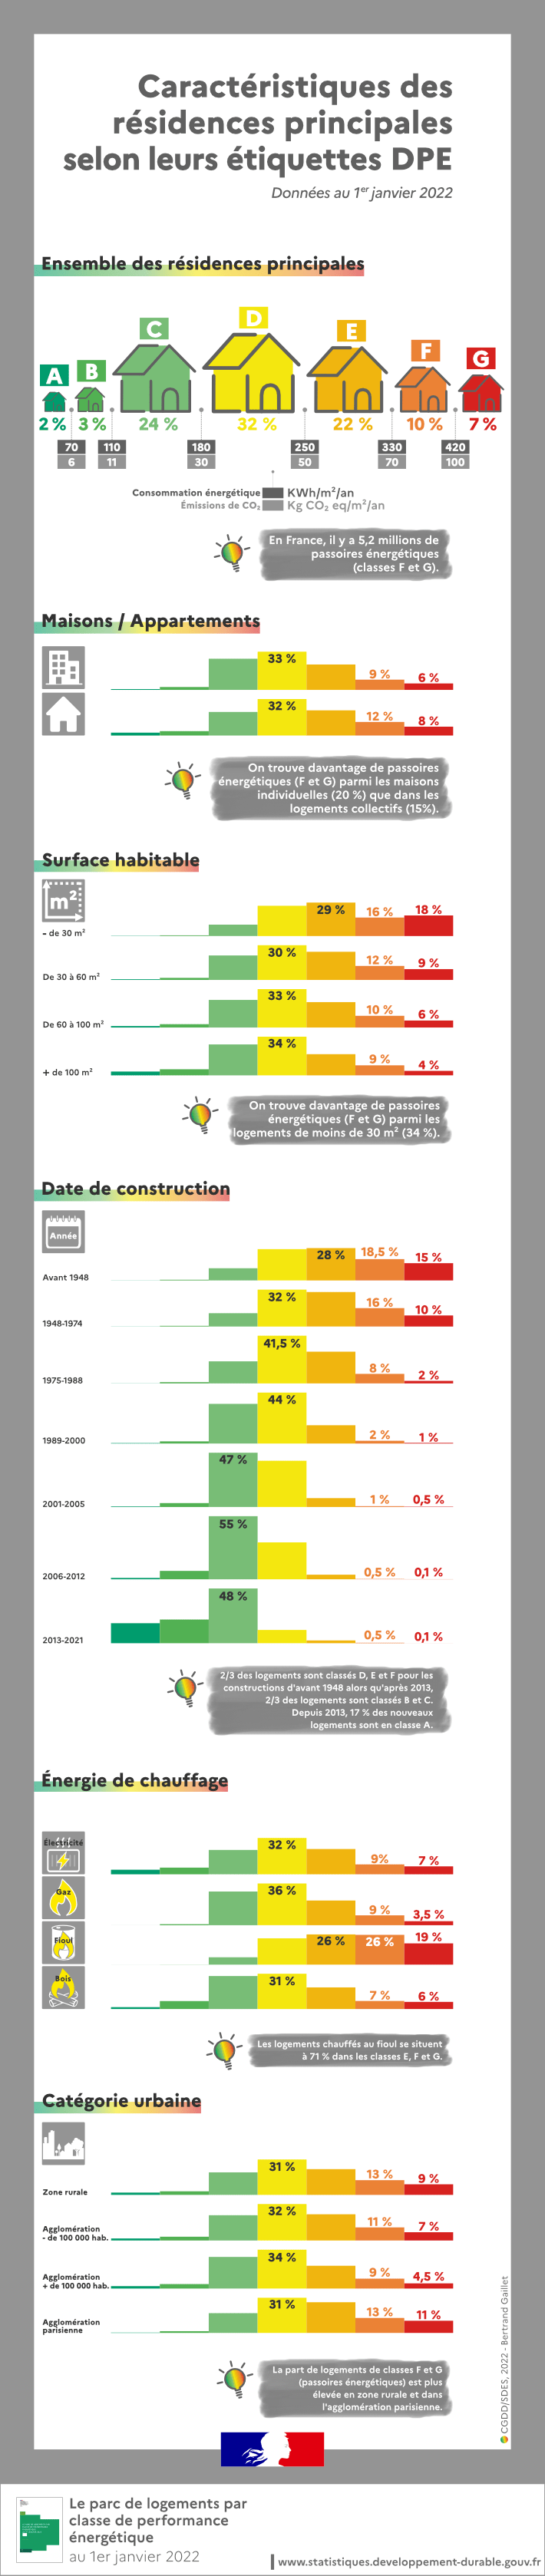 Infographie sur les résultats du nouveau DPE sur le parc de logements en France selon différents critères